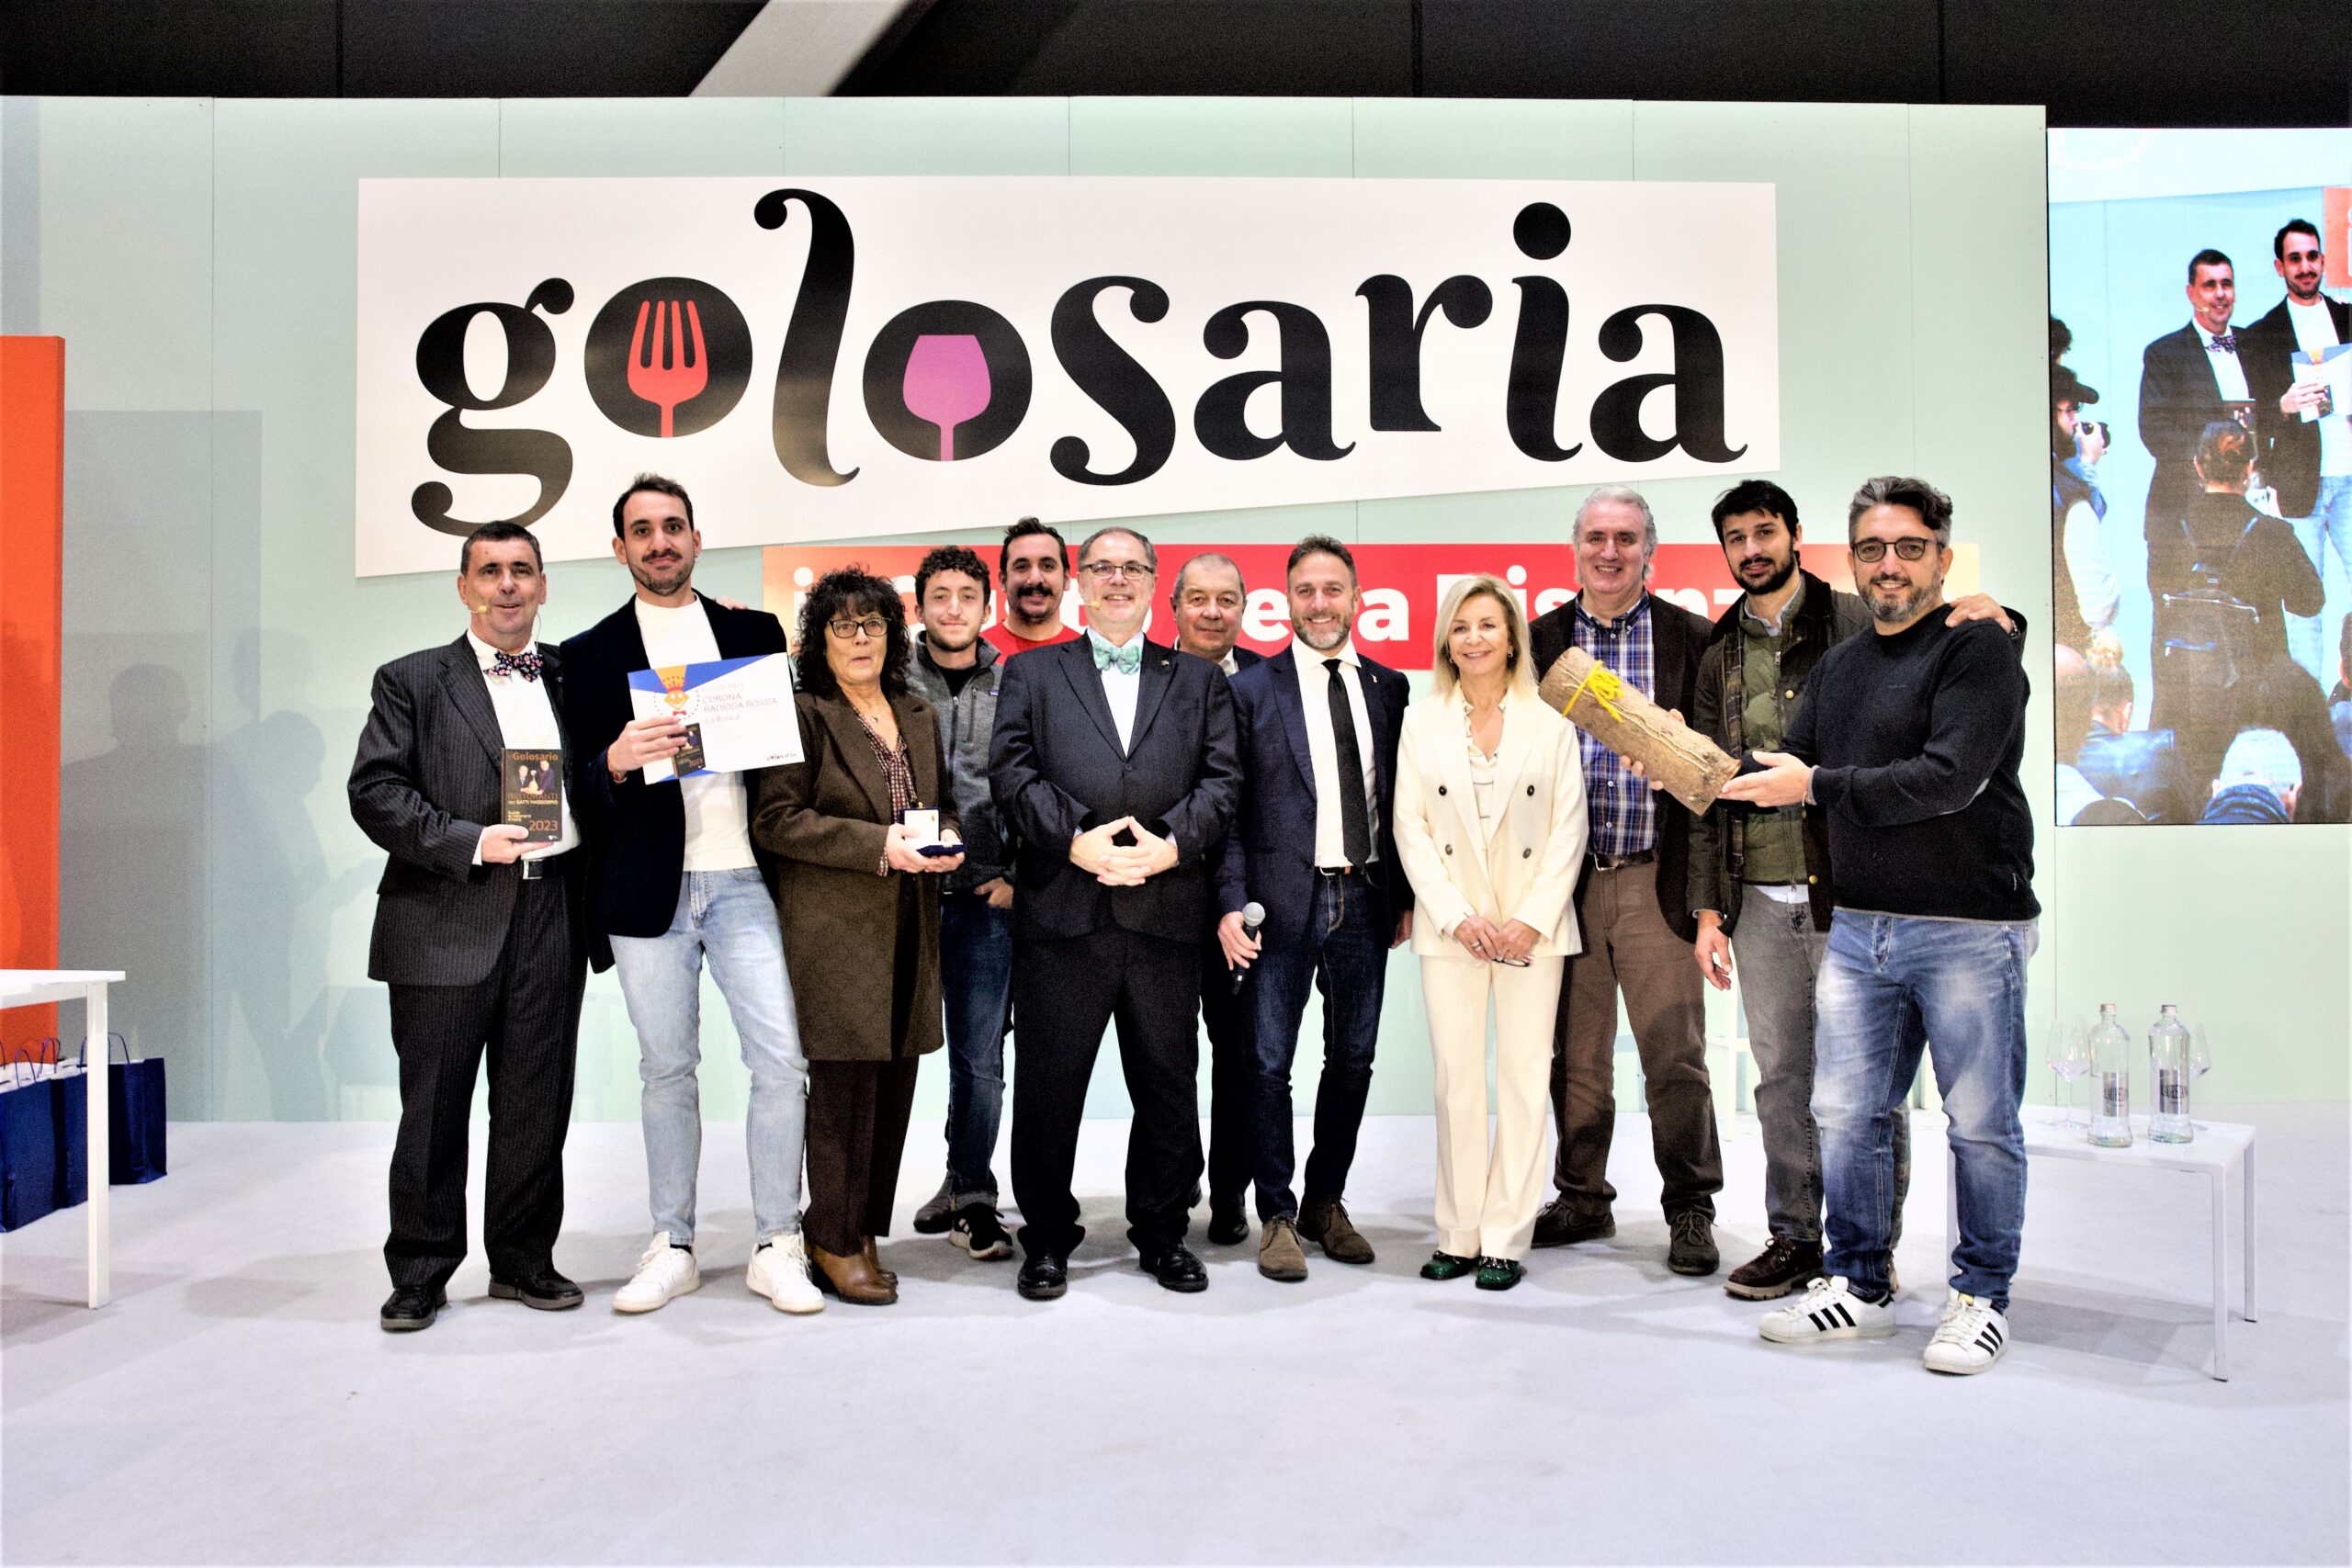 Successo record per la 17esima edizione di Golosaria organizzata da Paolo Massobrio e Marco Gatti